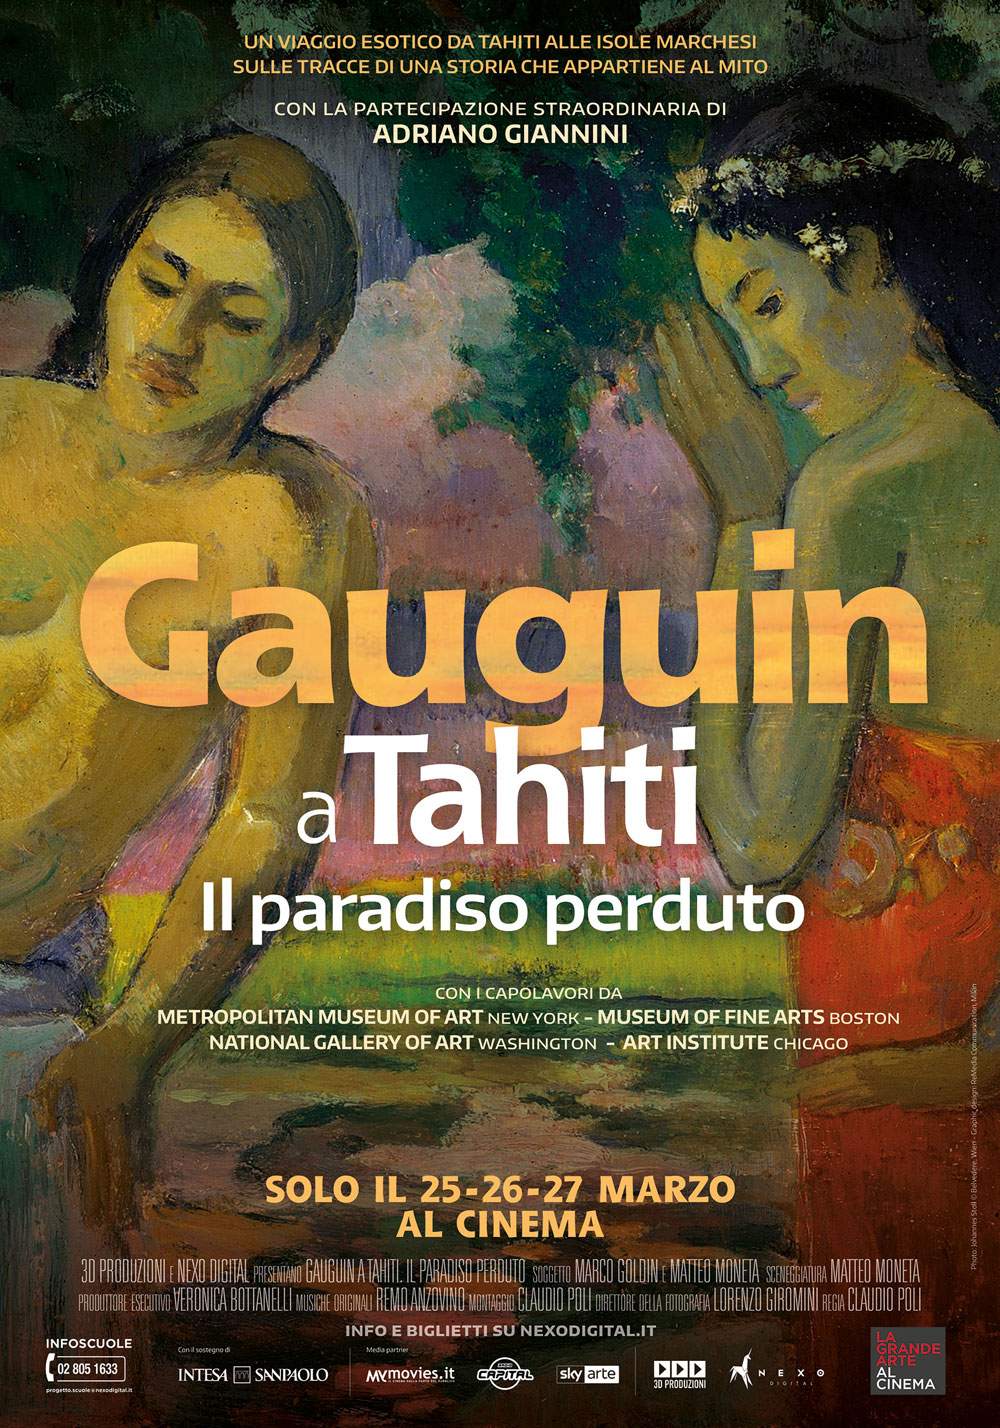 La Grande Arte al Cinema porterà nelle sale cinematografiche Gauguin